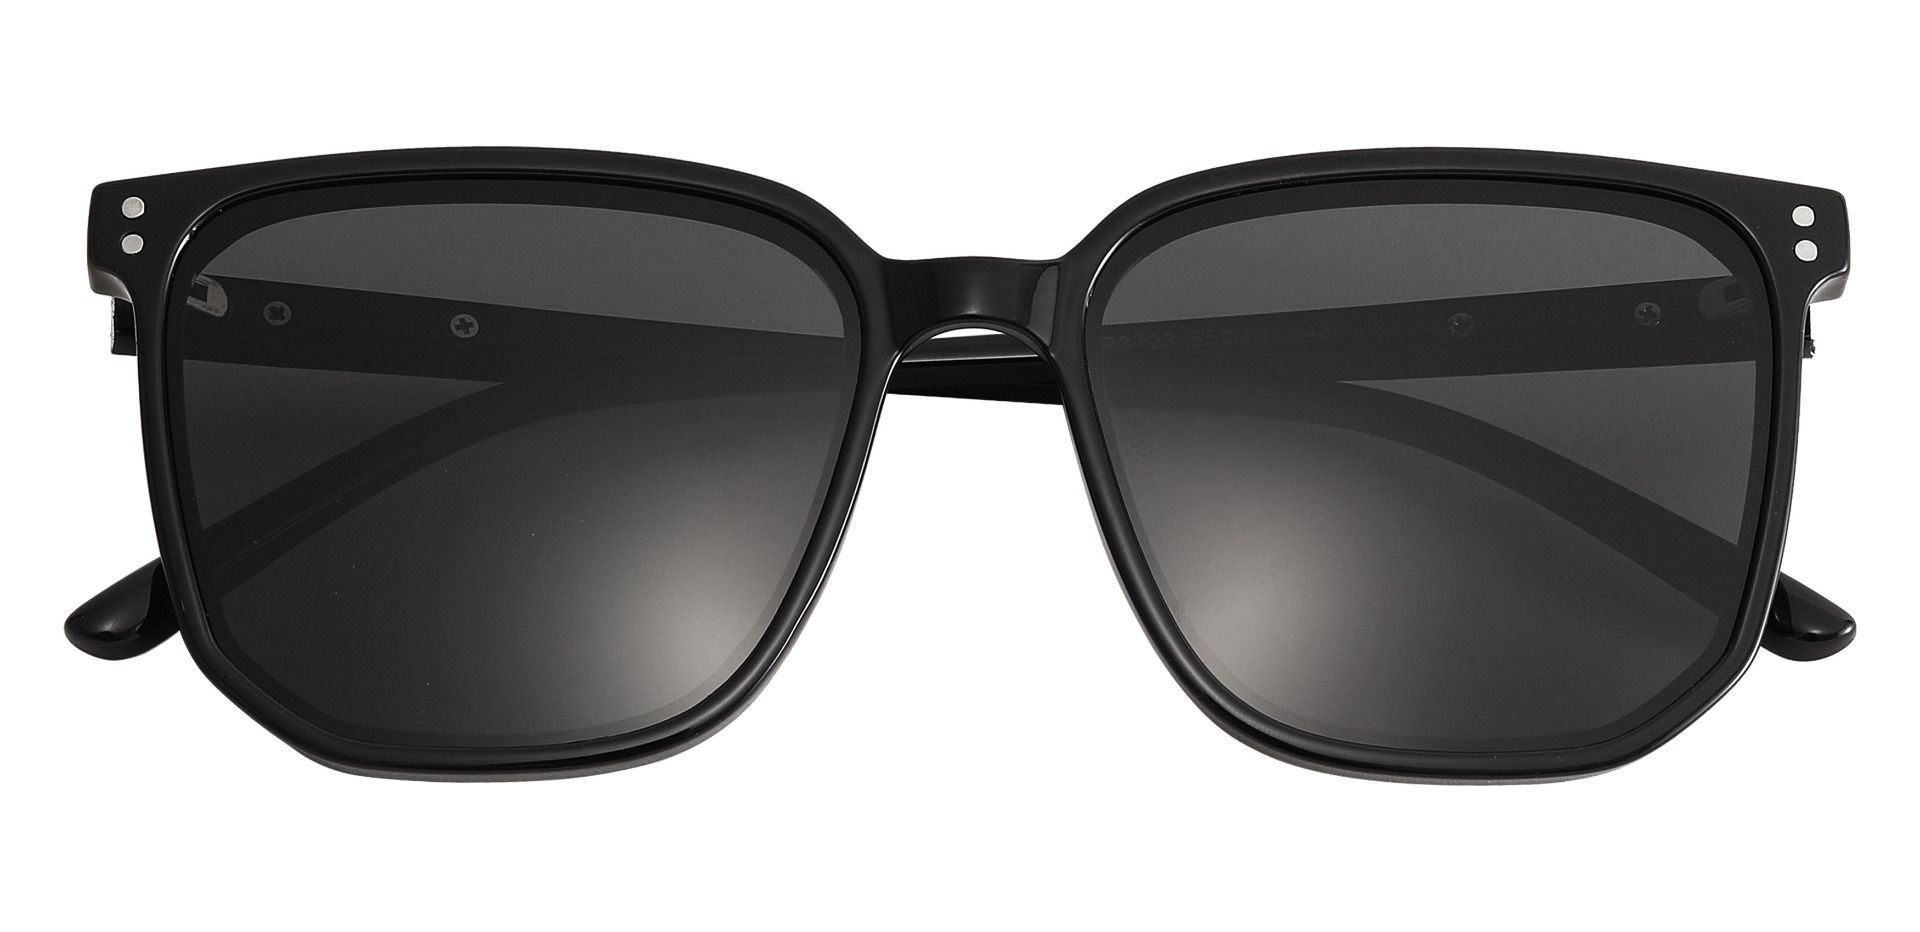 Richmond Square Black Non-Rx Sunglasses